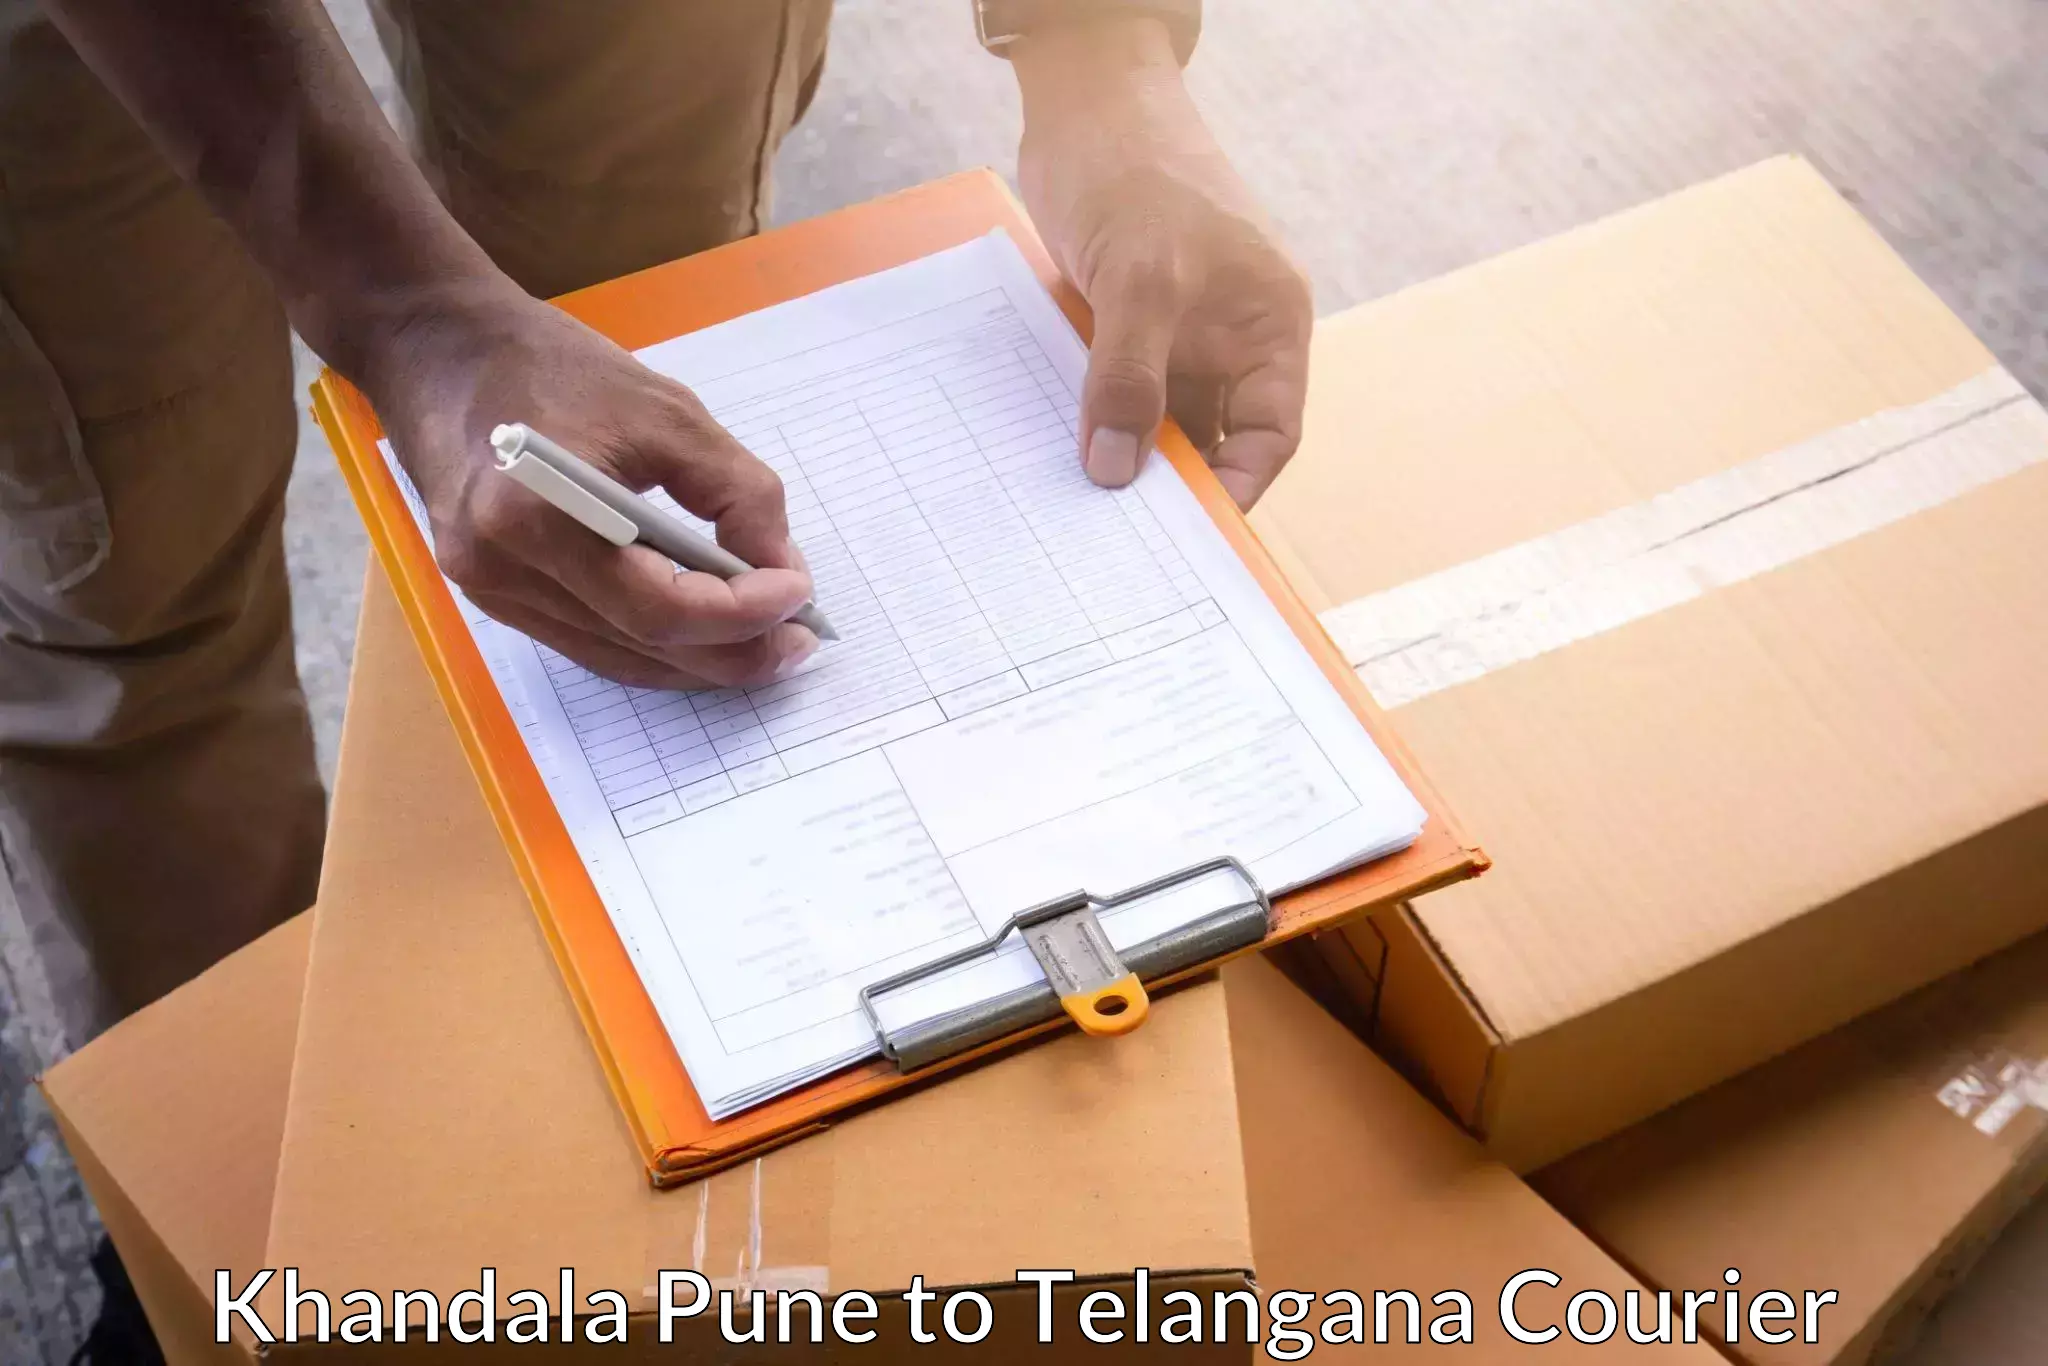 Affordable parcel service Khandala Pune to Jannaram